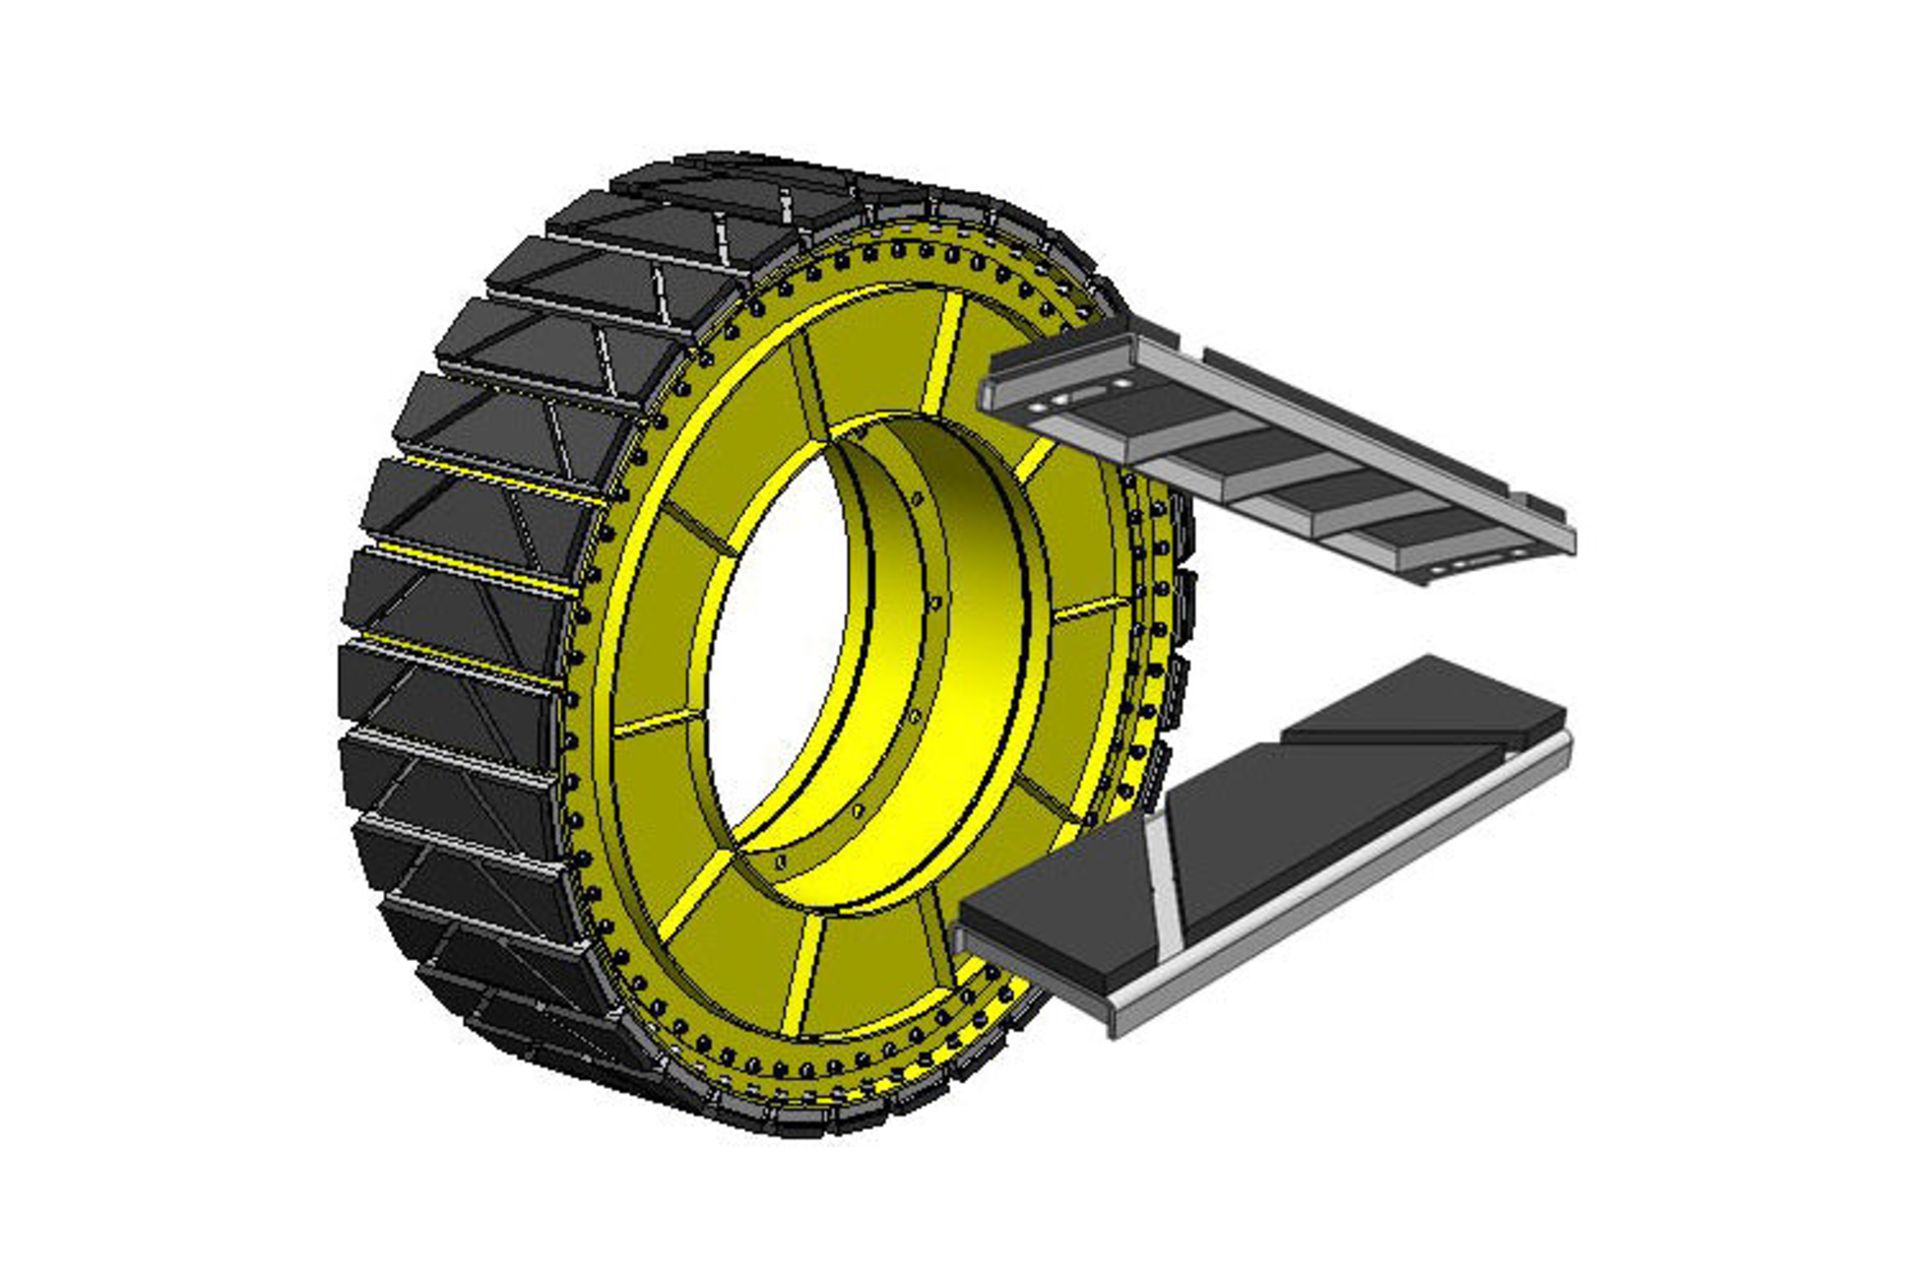 مرجع متخصصين ايران چرخ تعليق هوايي / Air suspension wheel